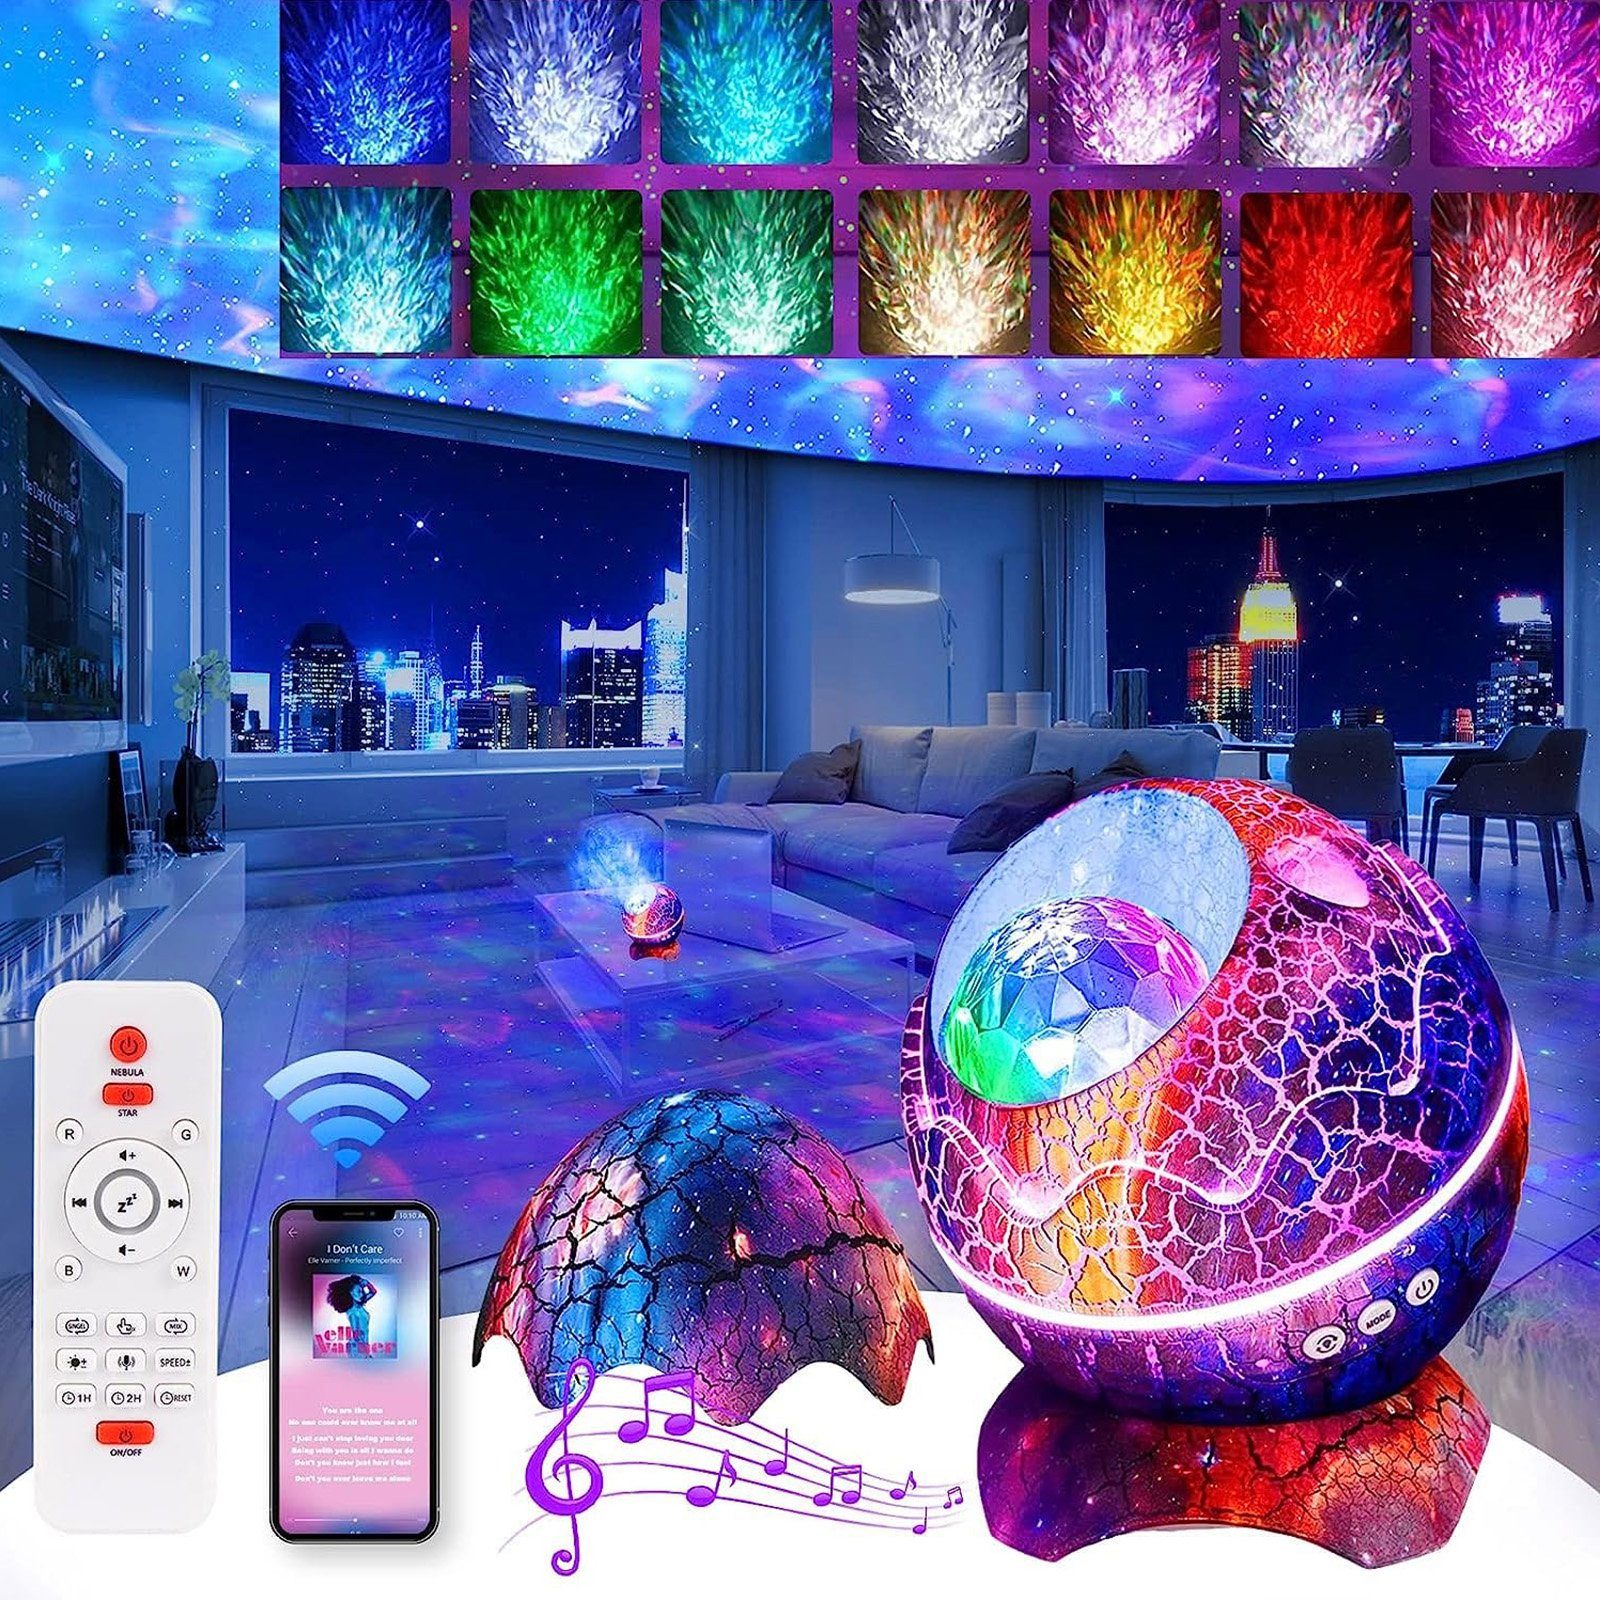 Rosnek LED Nachtlicht 14 Farben, weißes Rauschen, für Kinderzimmer Wohnzimmer Party Deko, Ohne Mikrofon, Farbwechsler, Bluetooth-Lautsprecher, Fernbedienung